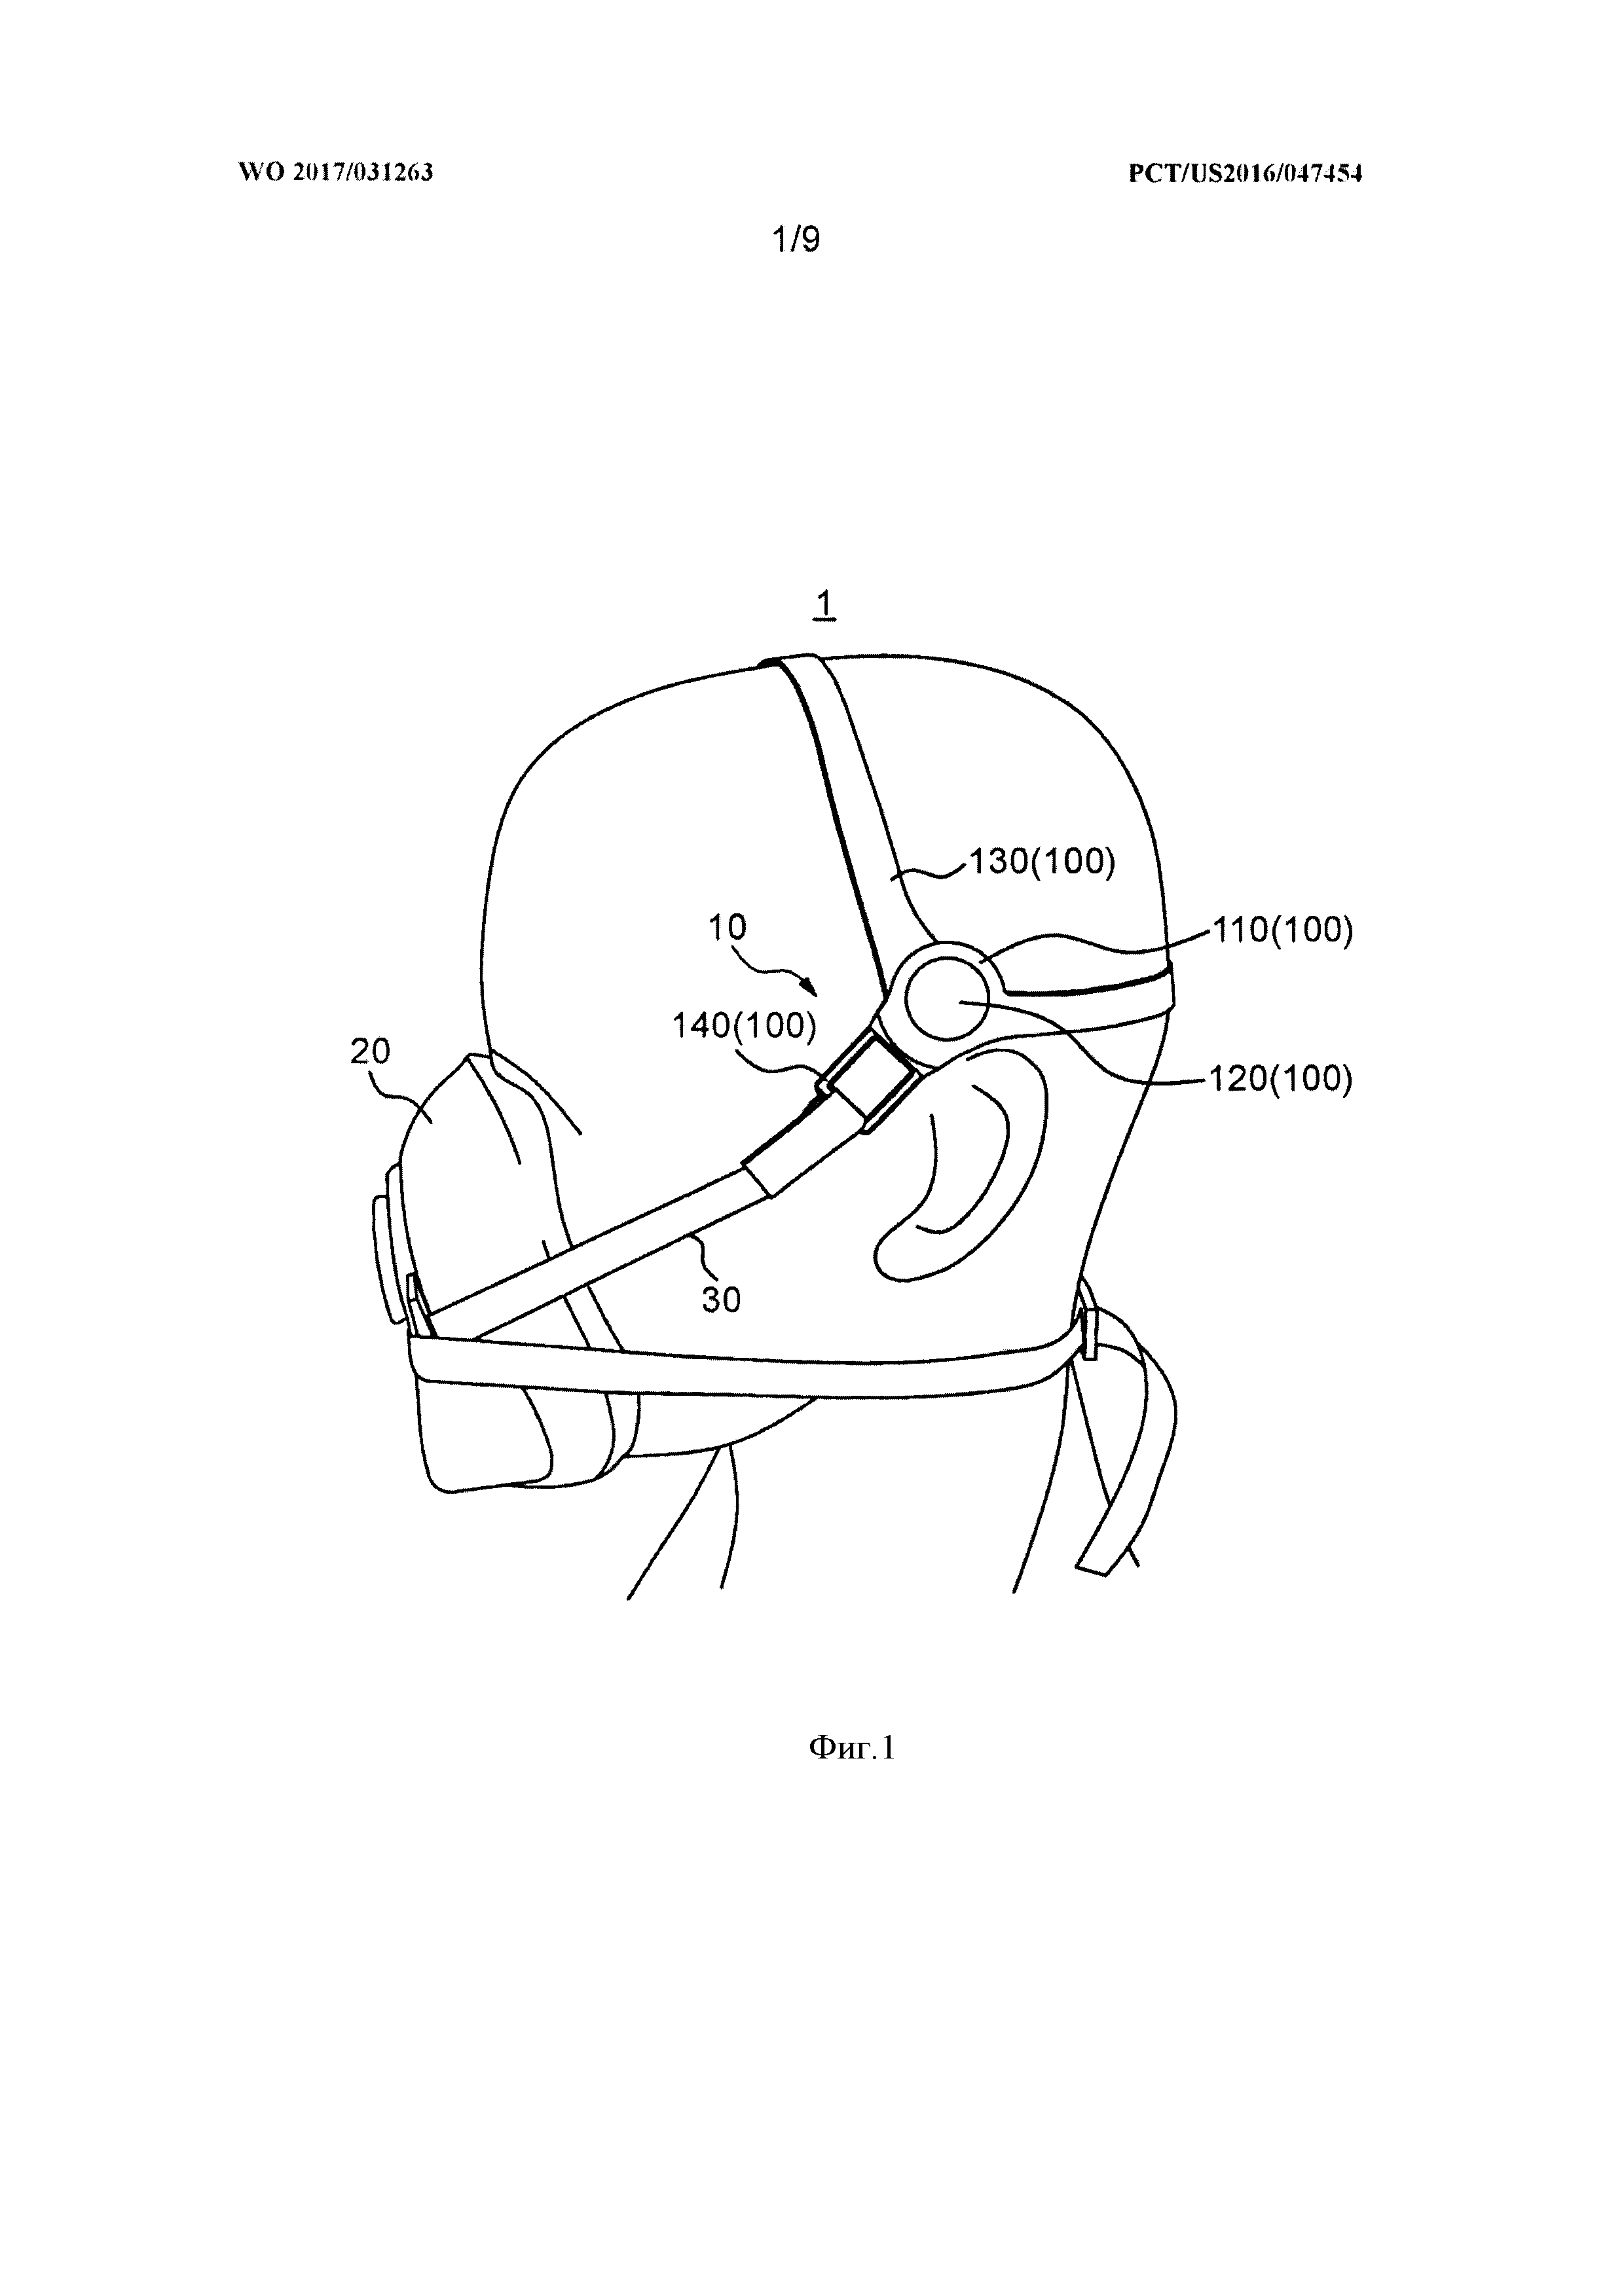 Компонент оголовья для ношения респираторной маски и головная гарнитура, содержащая этот компонент